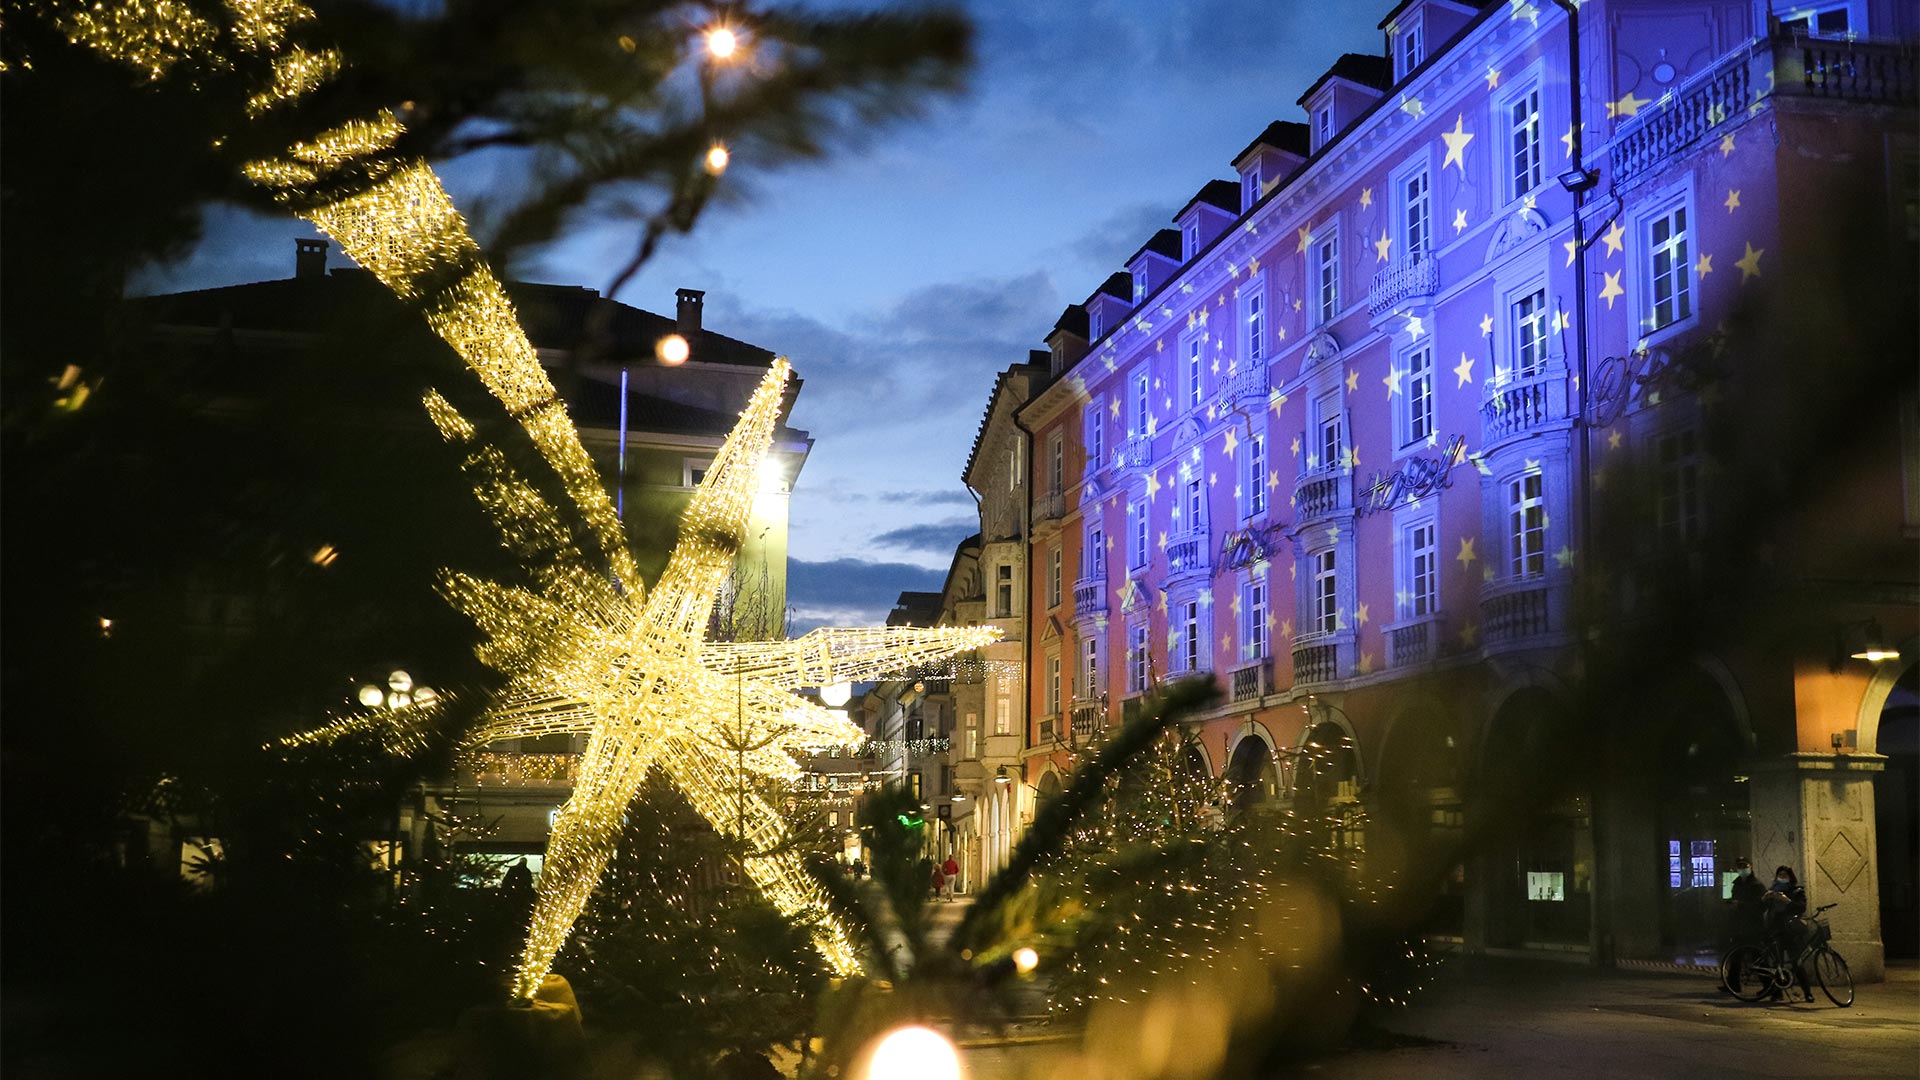 Bolzano una sera natalizia dove in piazza Walther si trova un luminare a forma di stella e gli edifici sono illuminati secondo la festività.